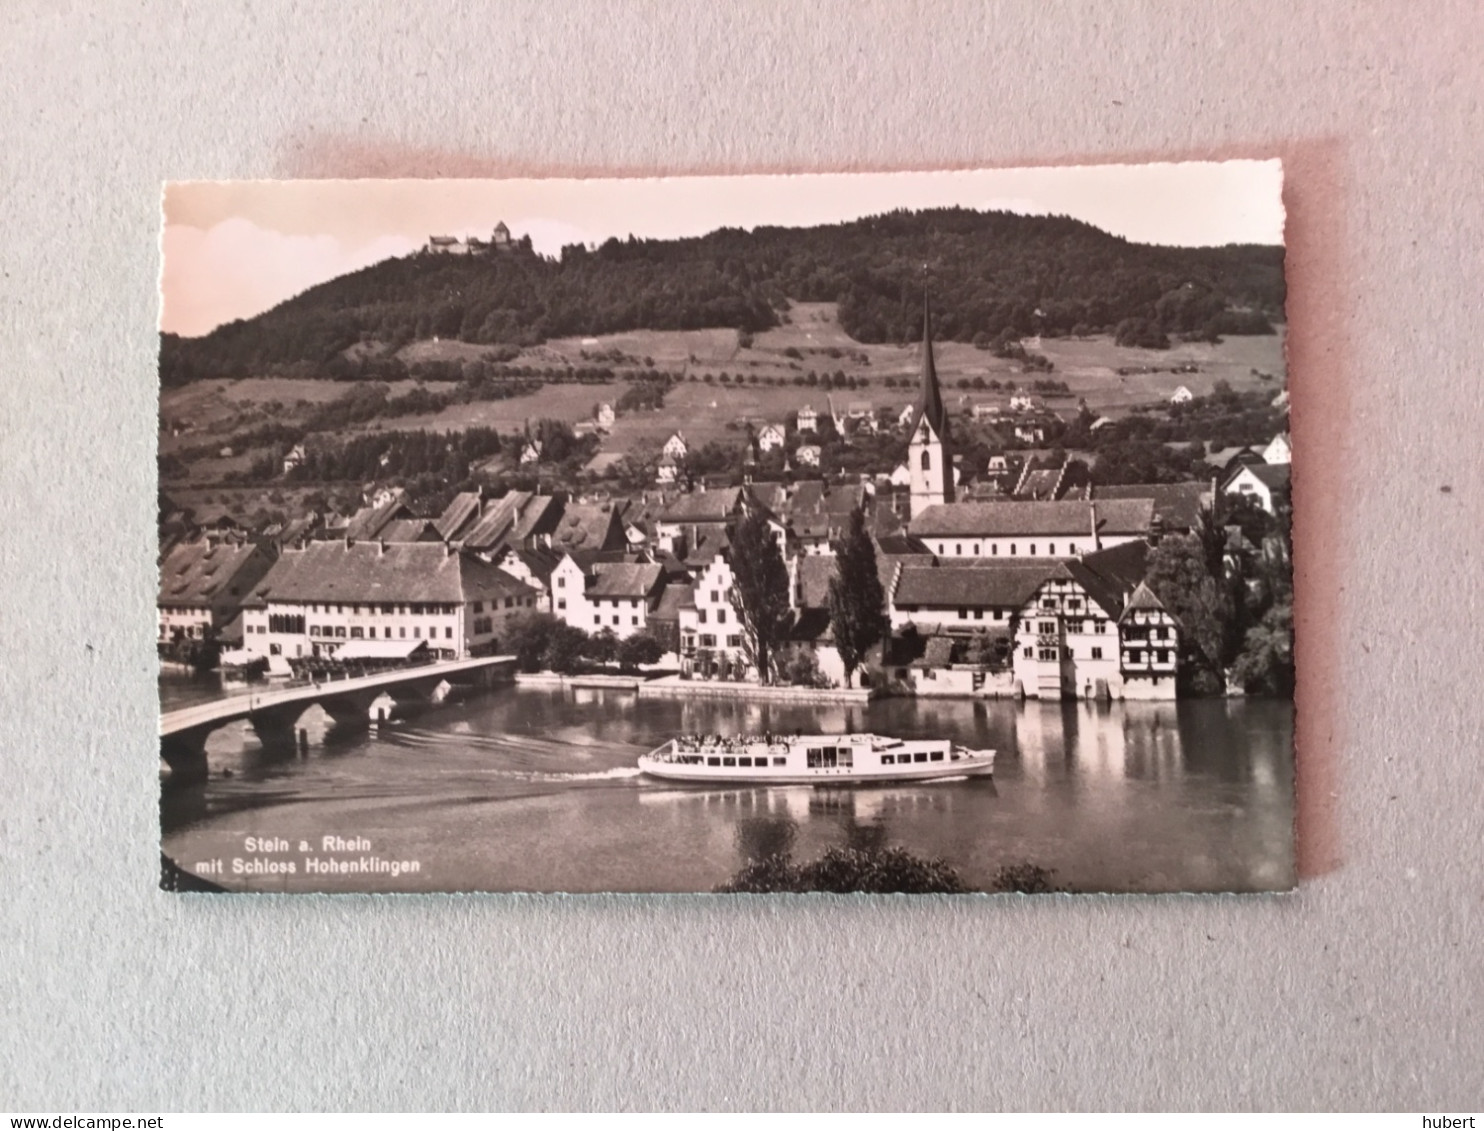 Stein a.Rhein lot de 12 cartes photos différents lieux et panorama